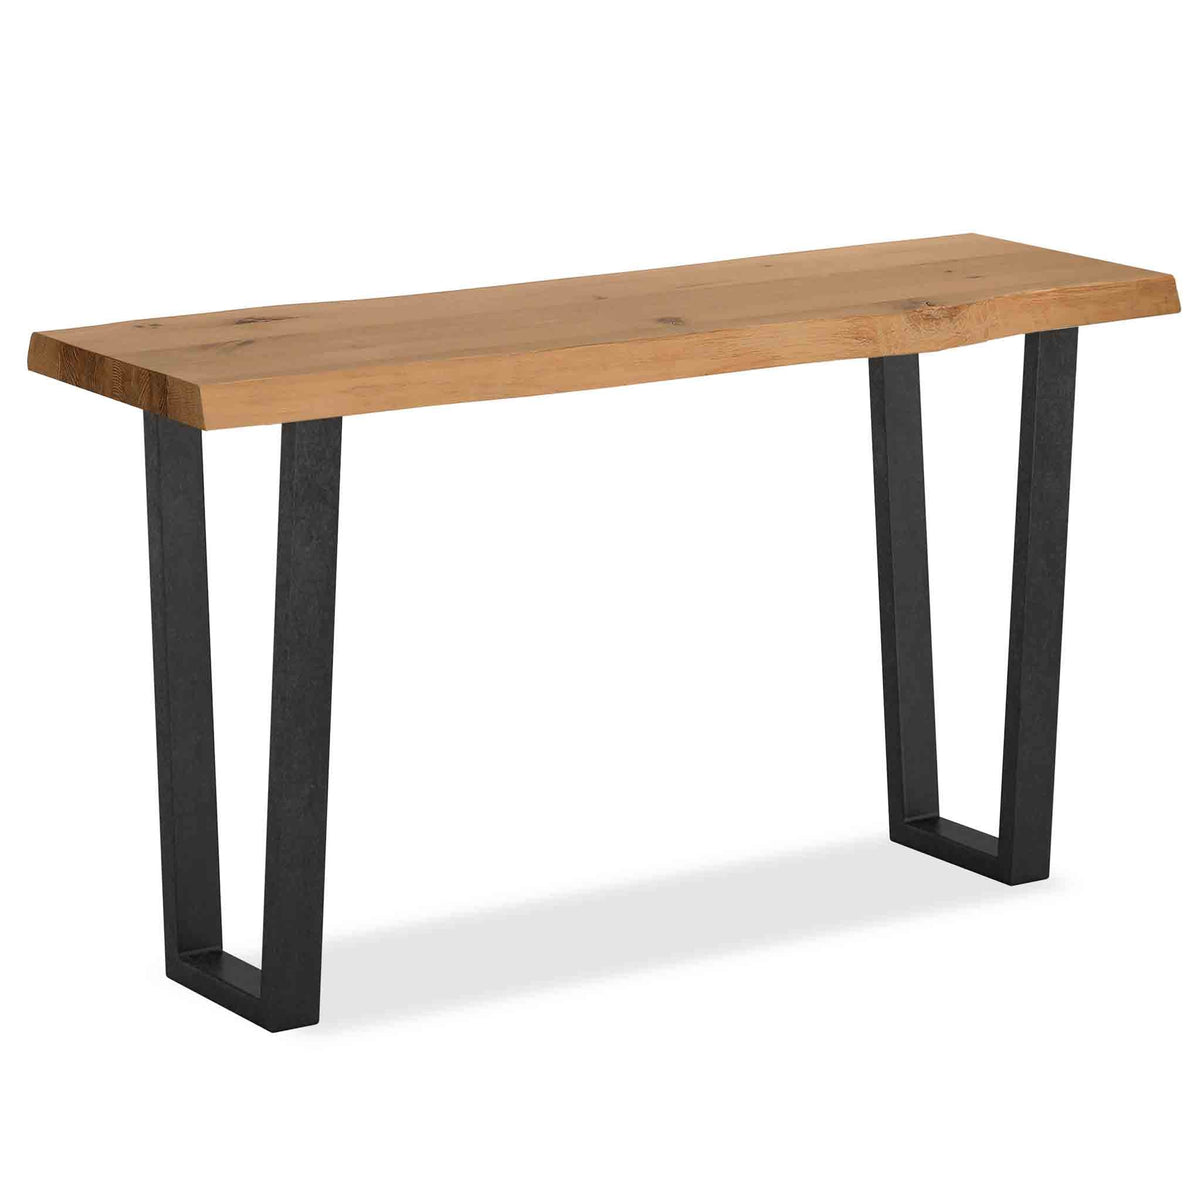 Oak Mill Console Table - Metal Base - Waxed Oak by Roseland Furniture